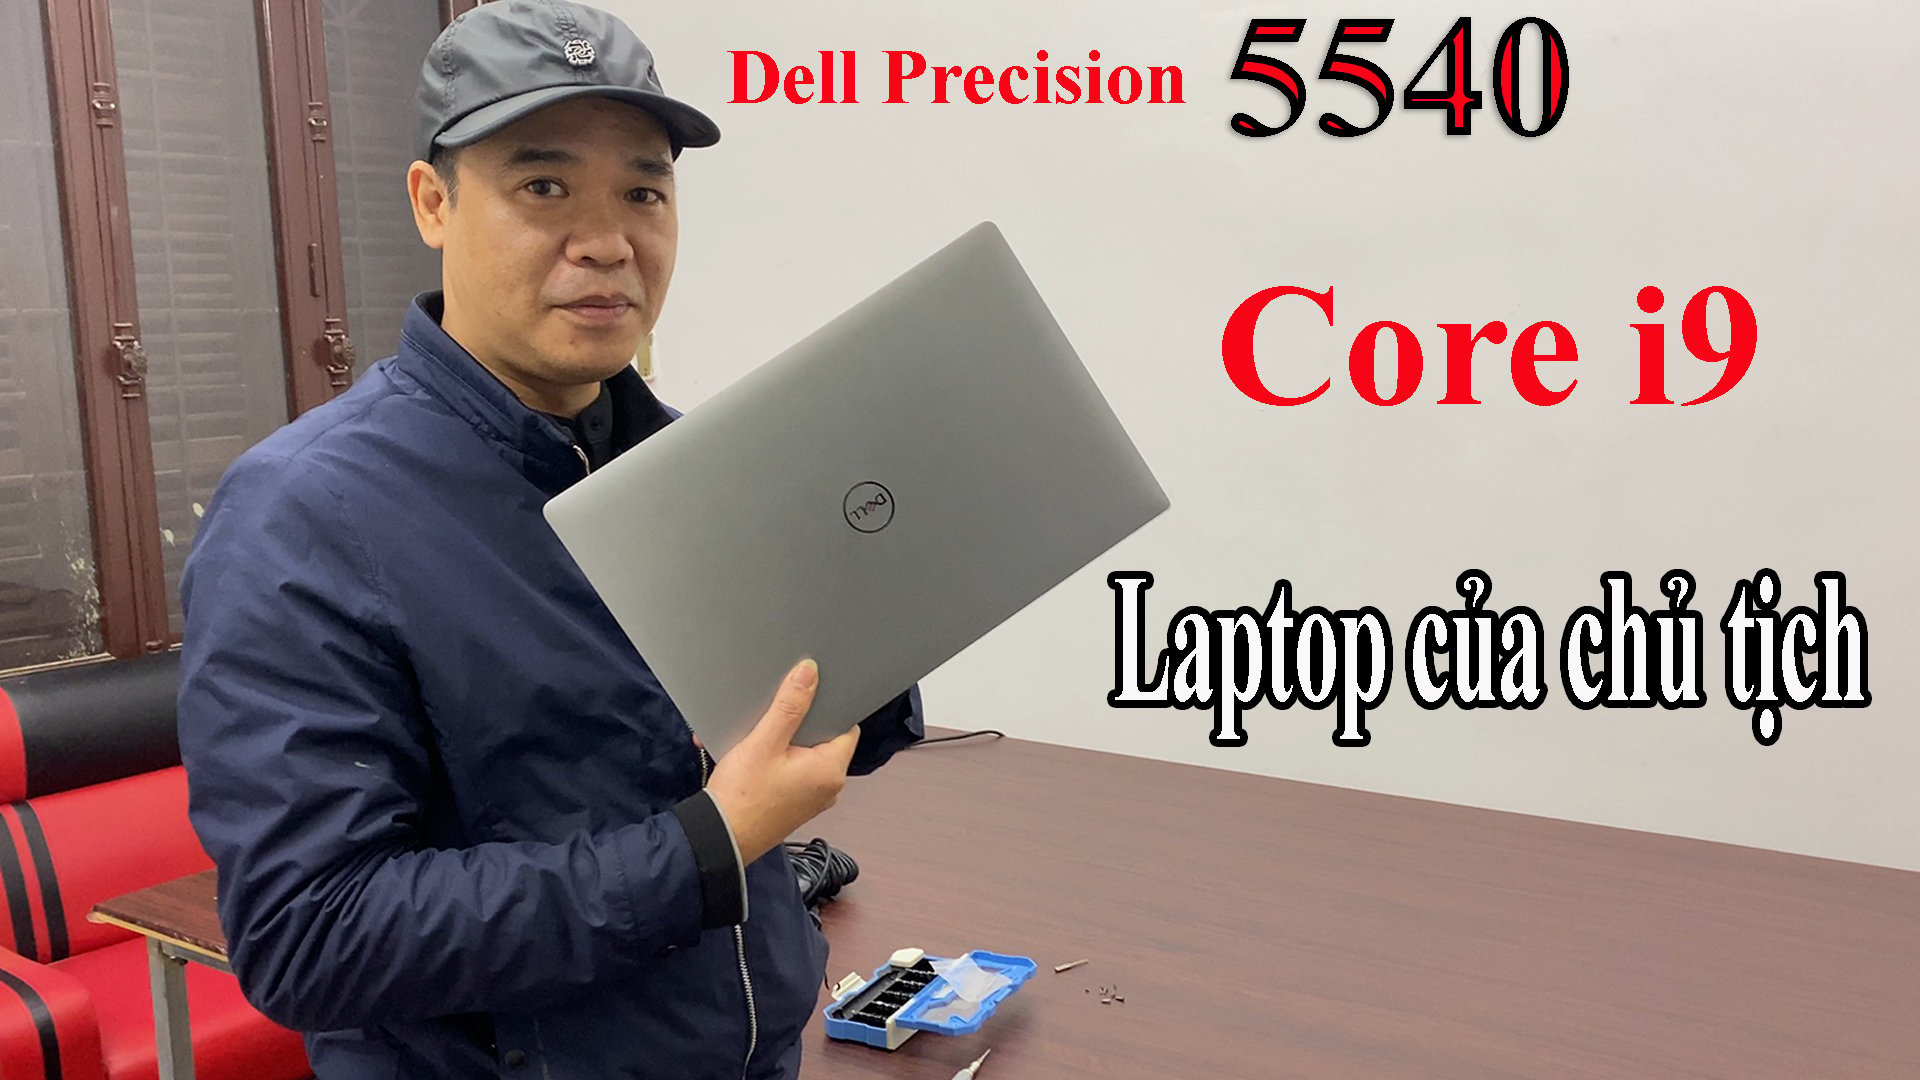 Dell Precision 5540 core i9 laptop của chủ tịch